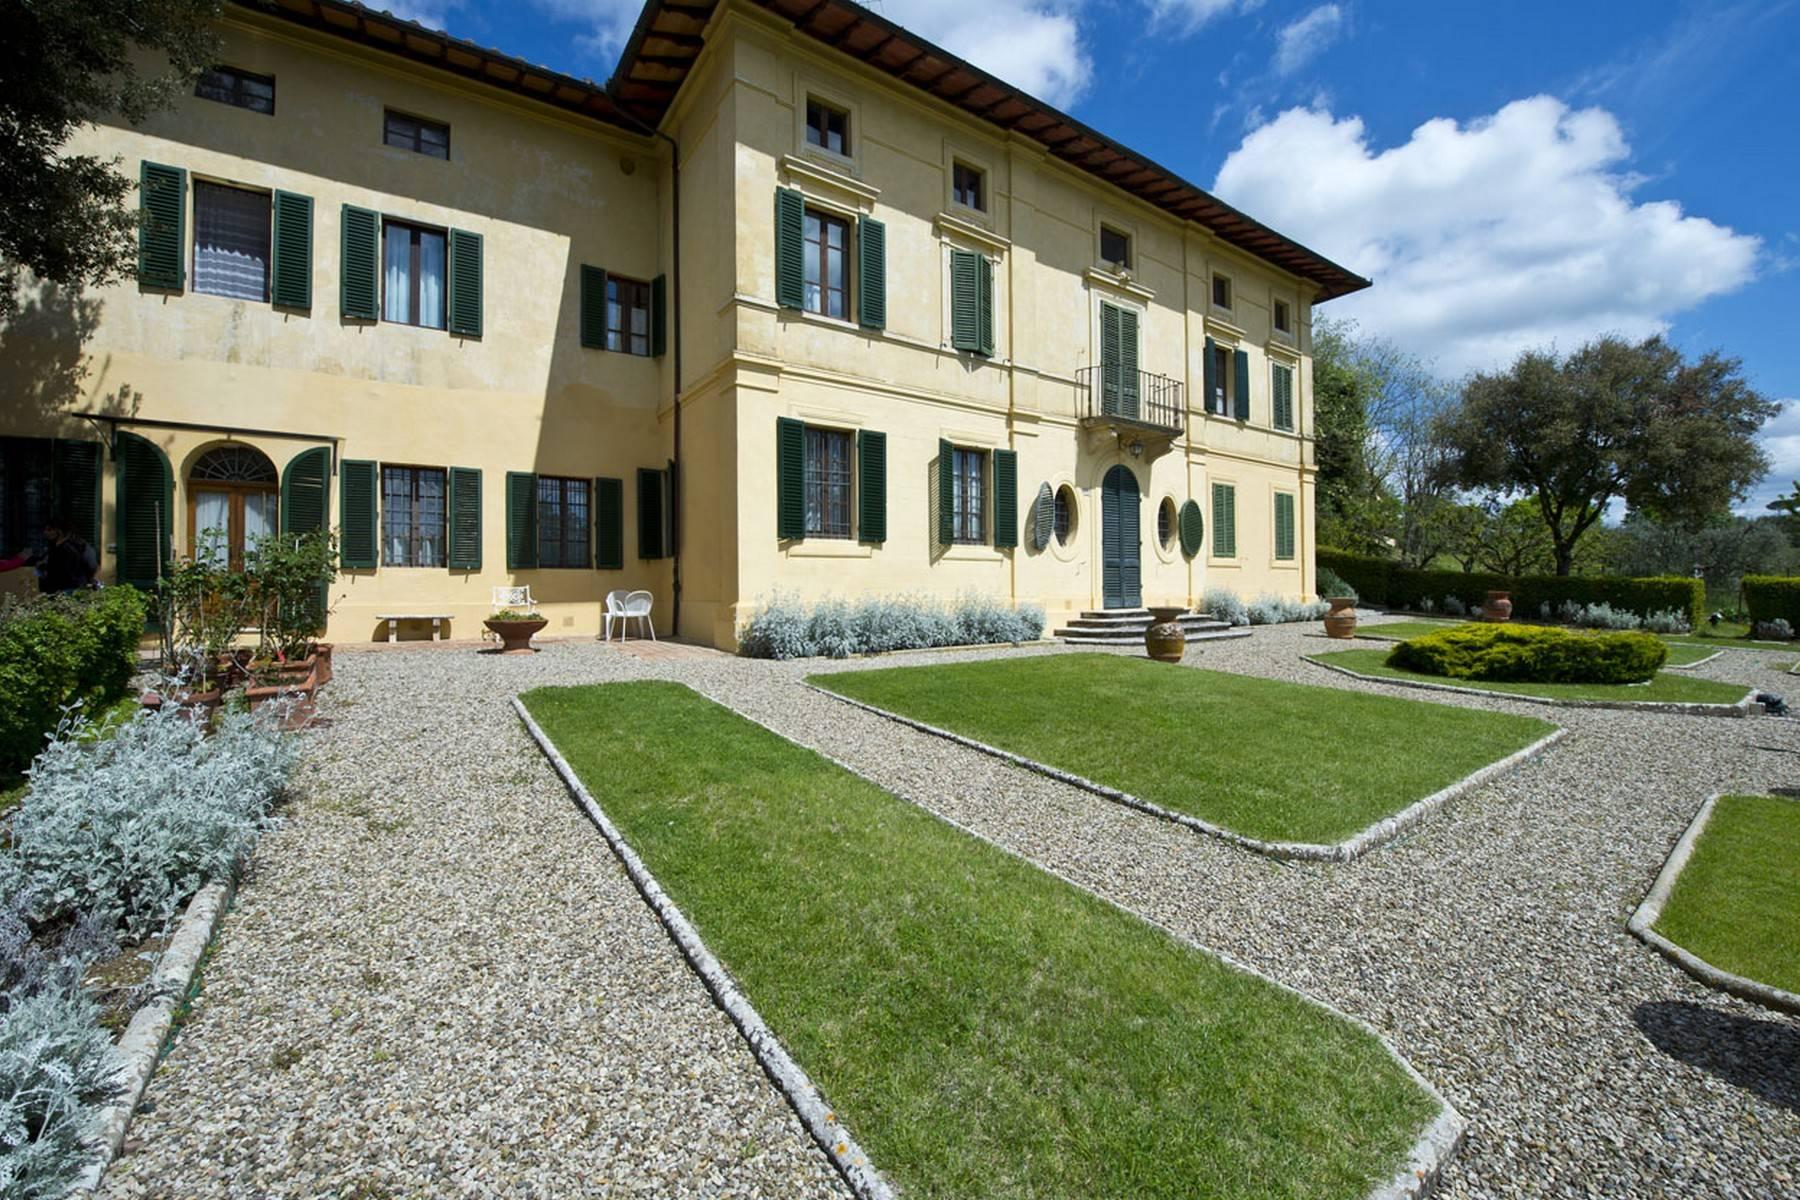 Spettacolare Villa Aristocratica alle Porte di Siena - 2